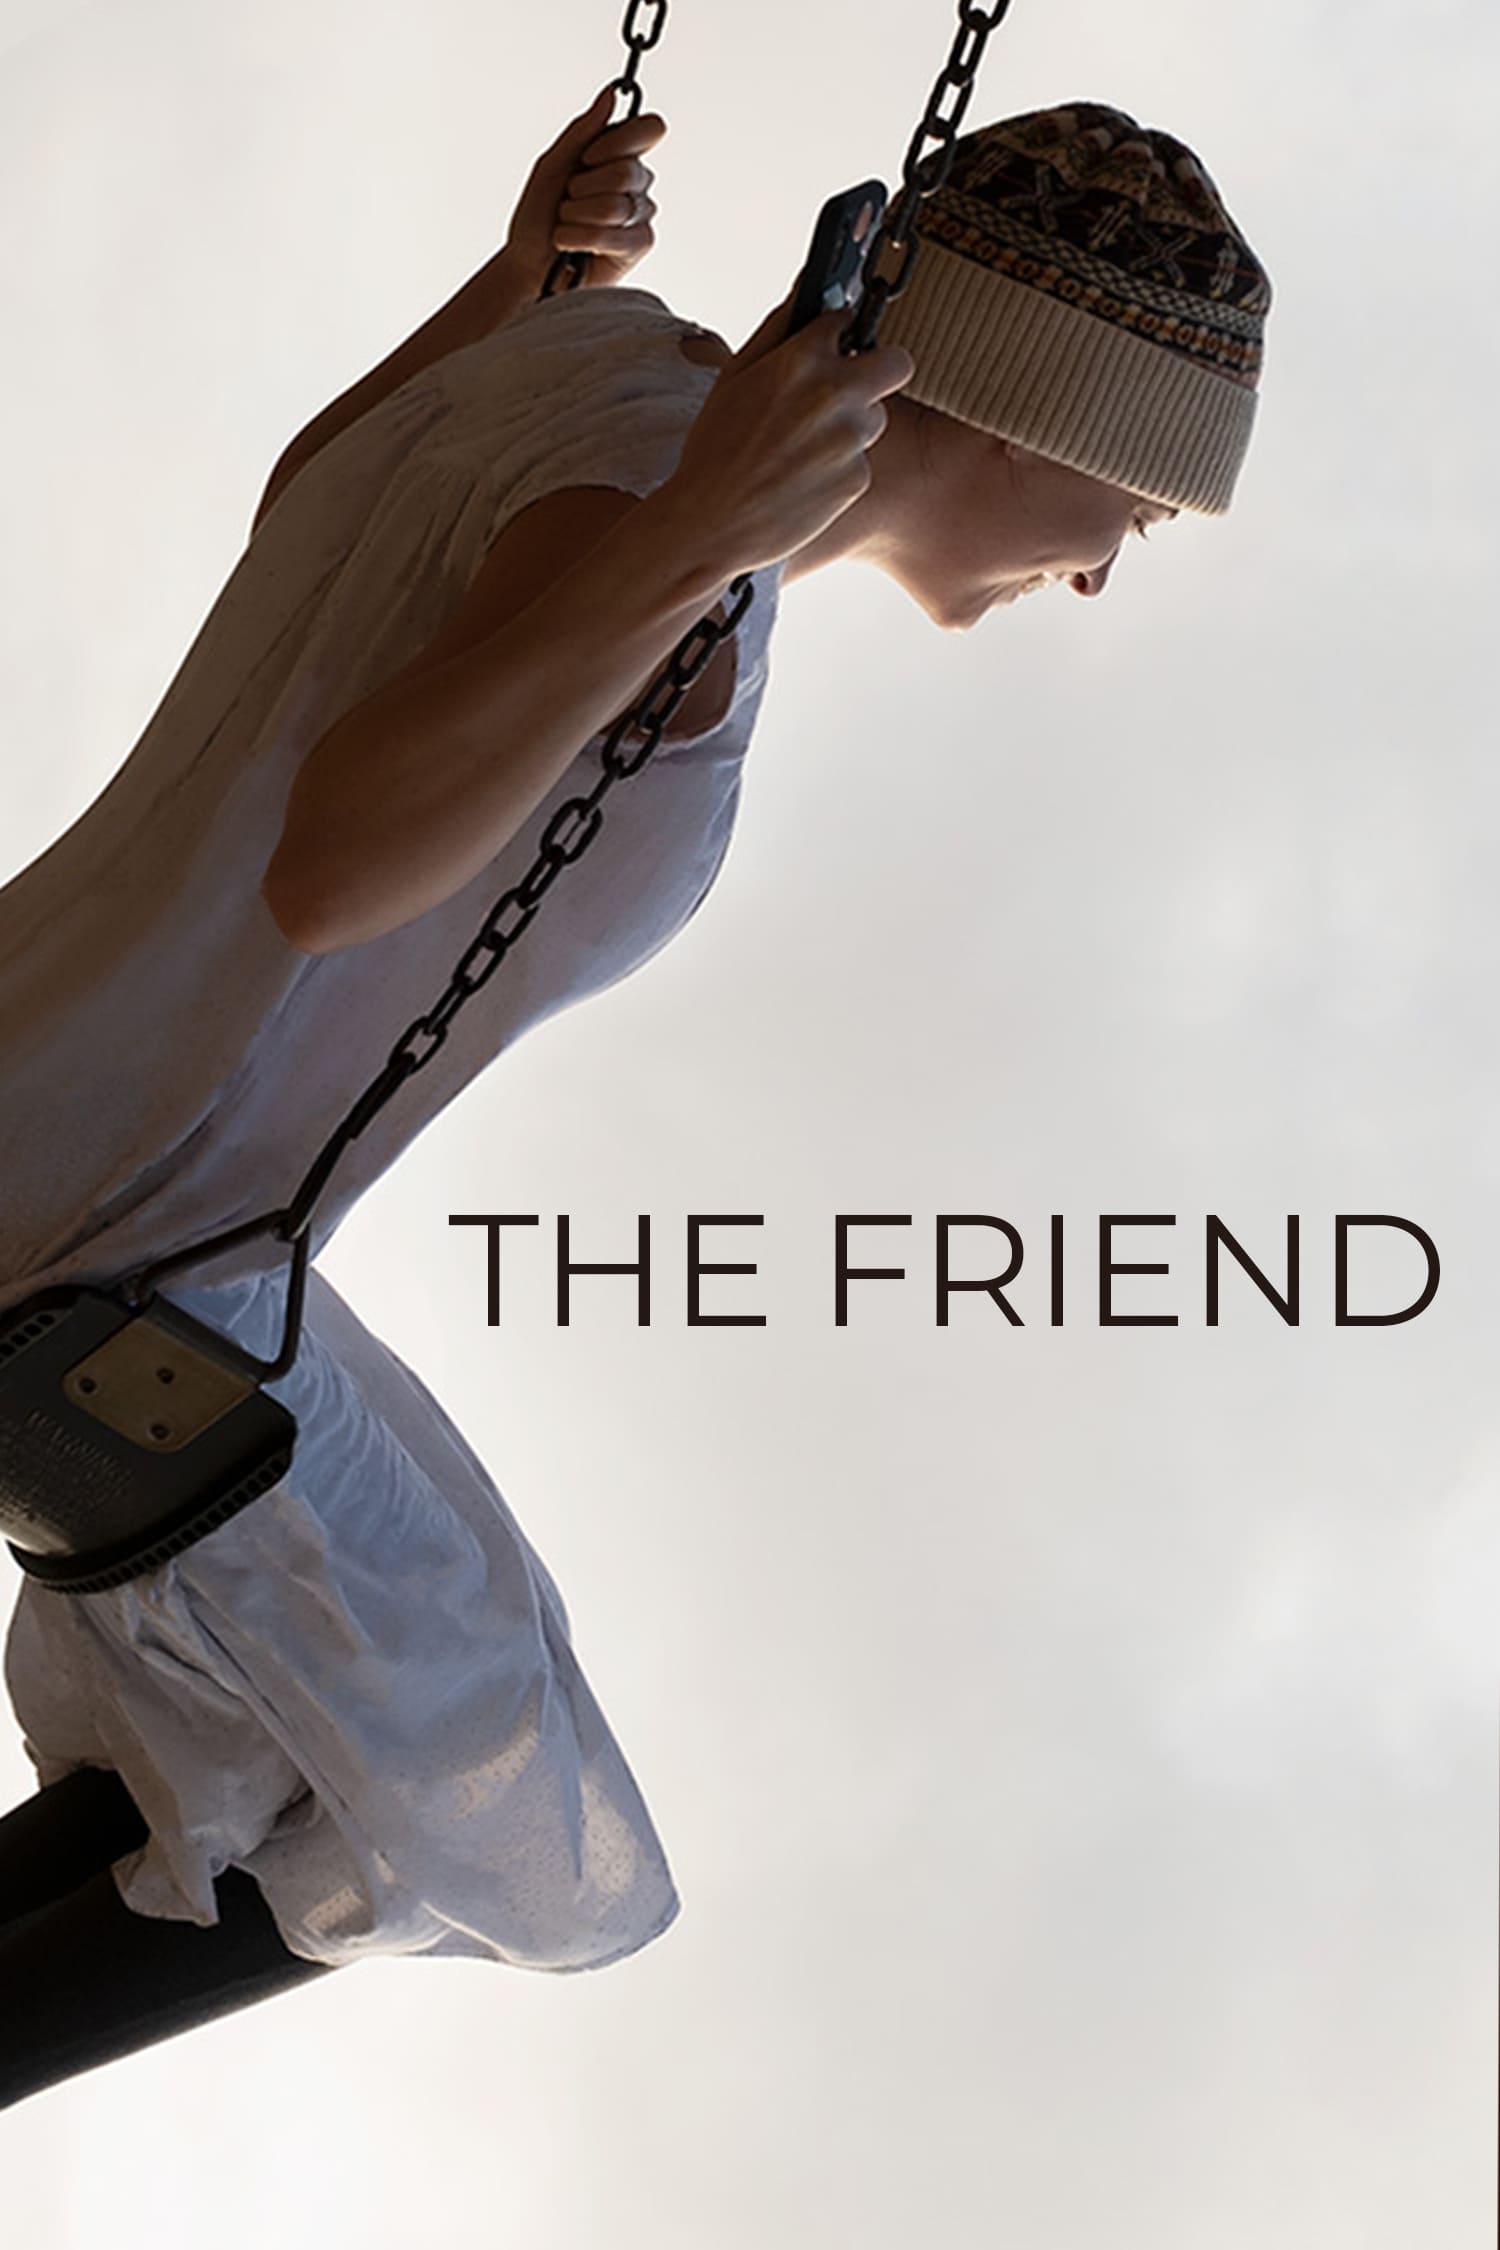 Plakat von "The Friend"